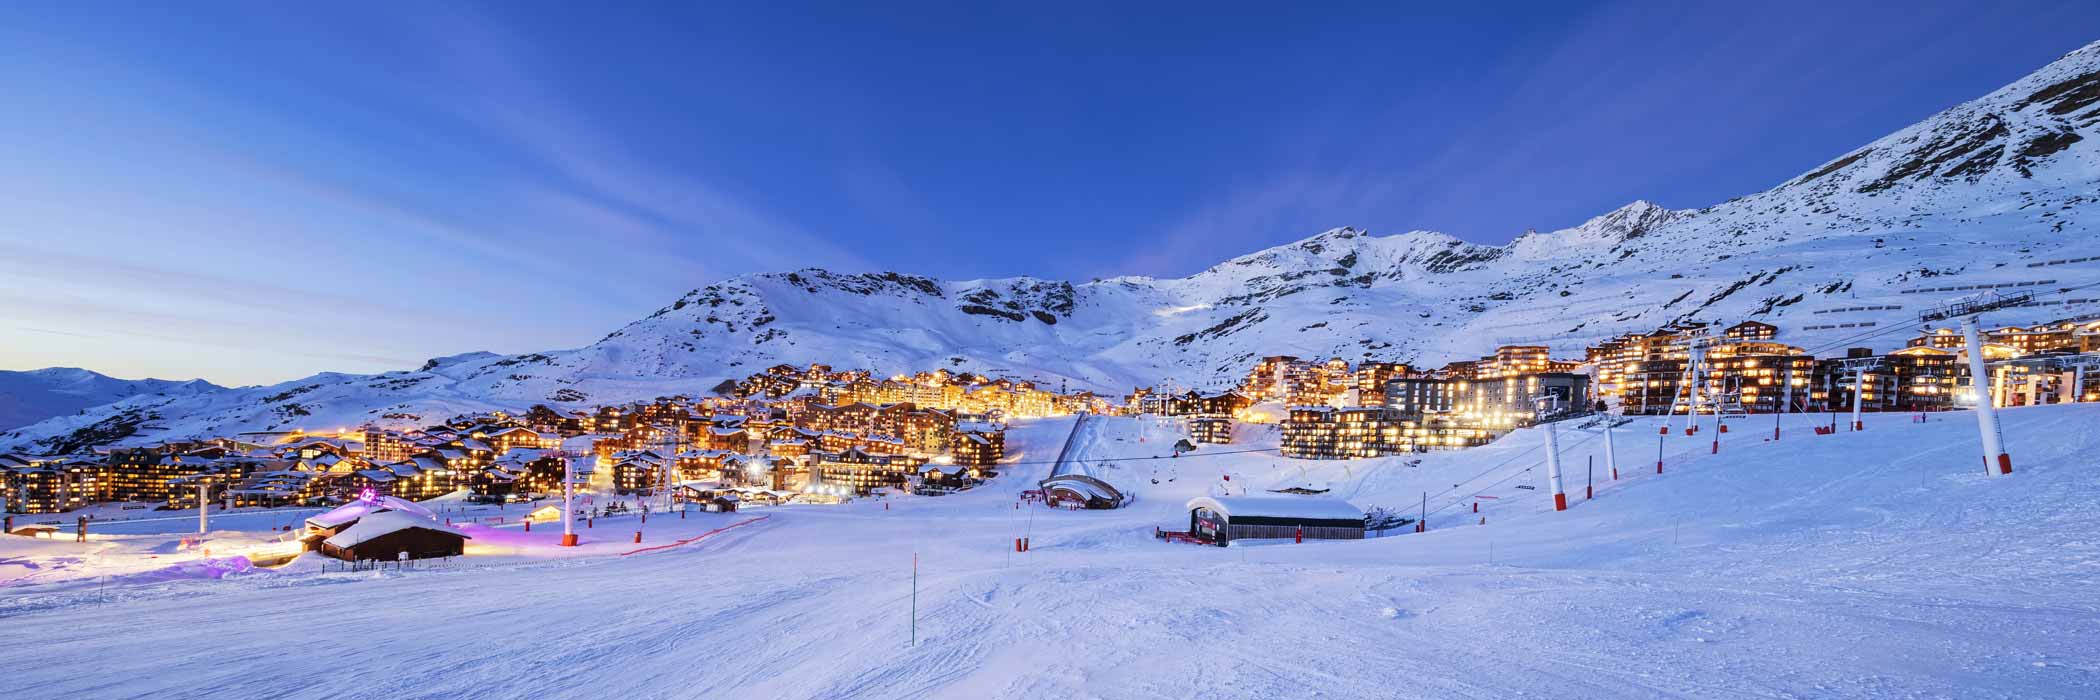 Val Thorens Ski Resort in France